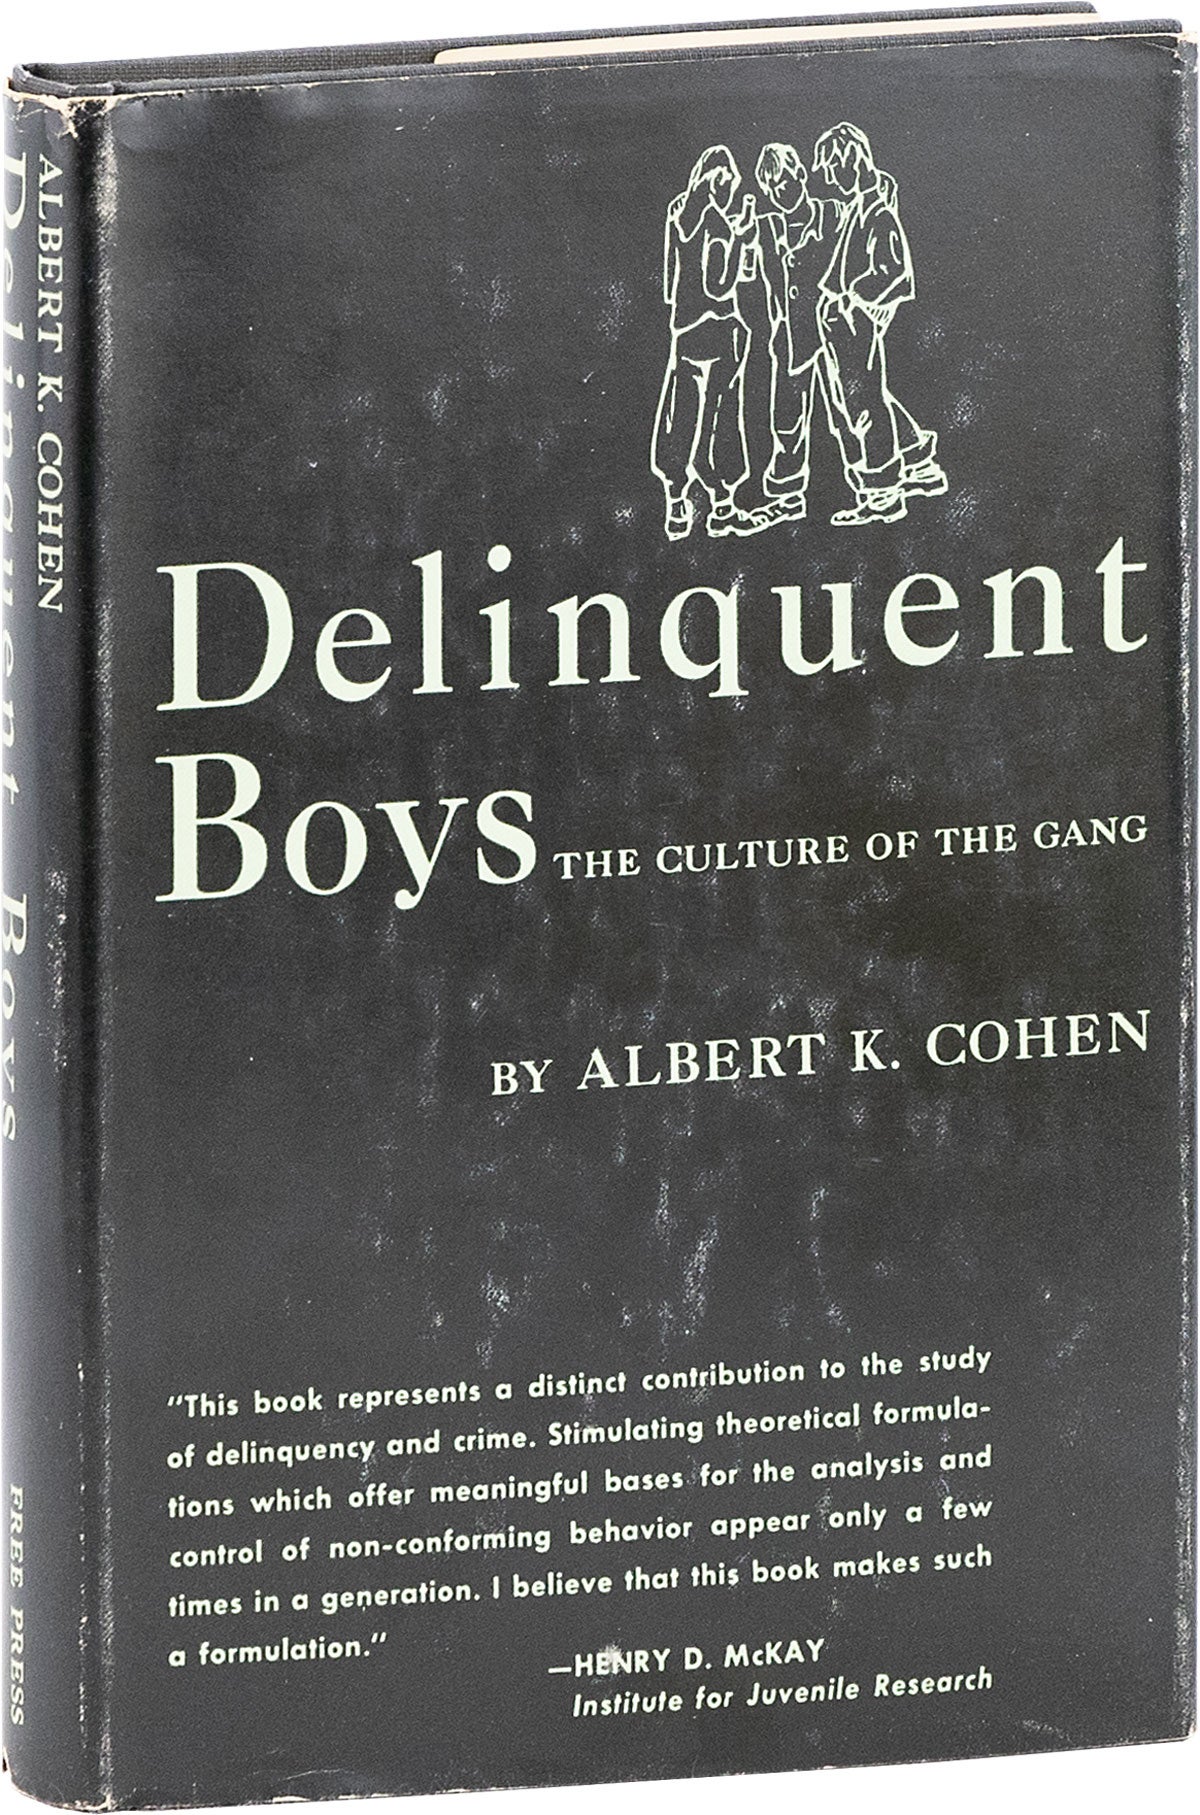 [Item #80734] Delinquent Boys; The Culture of The Gang. JUVENILE DELINQUENTS, Albert K. COHEN.